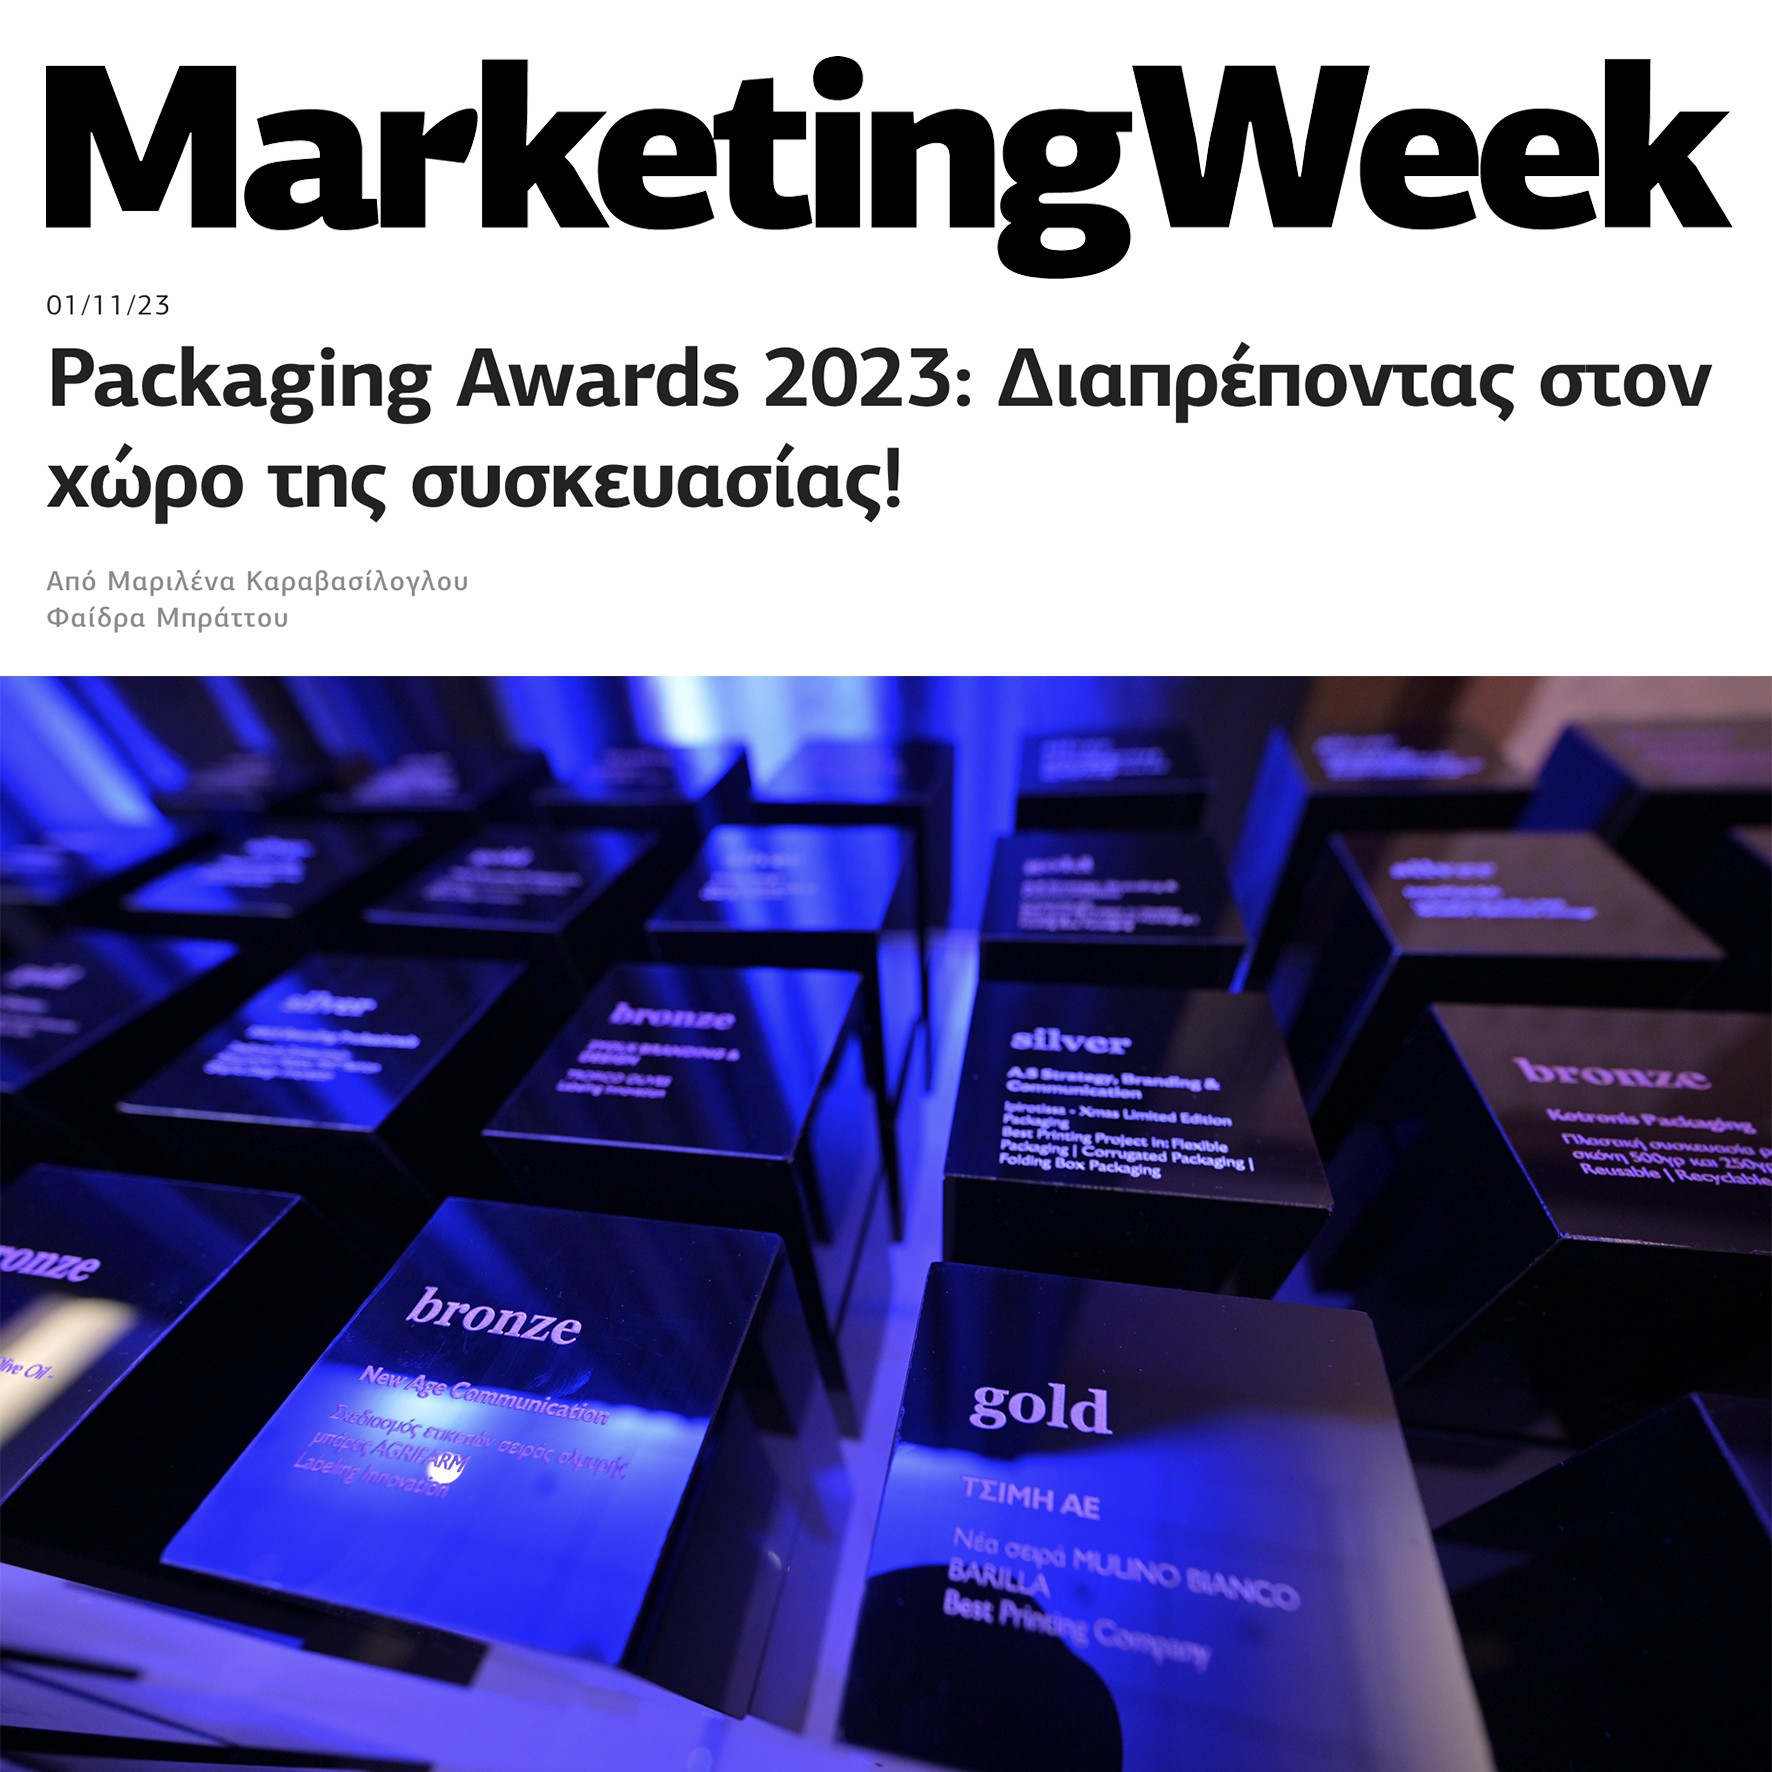 Αναφορά σε άρθρο του Marketing Week για την νίκη στα βραβεία Packaging Awards 2023